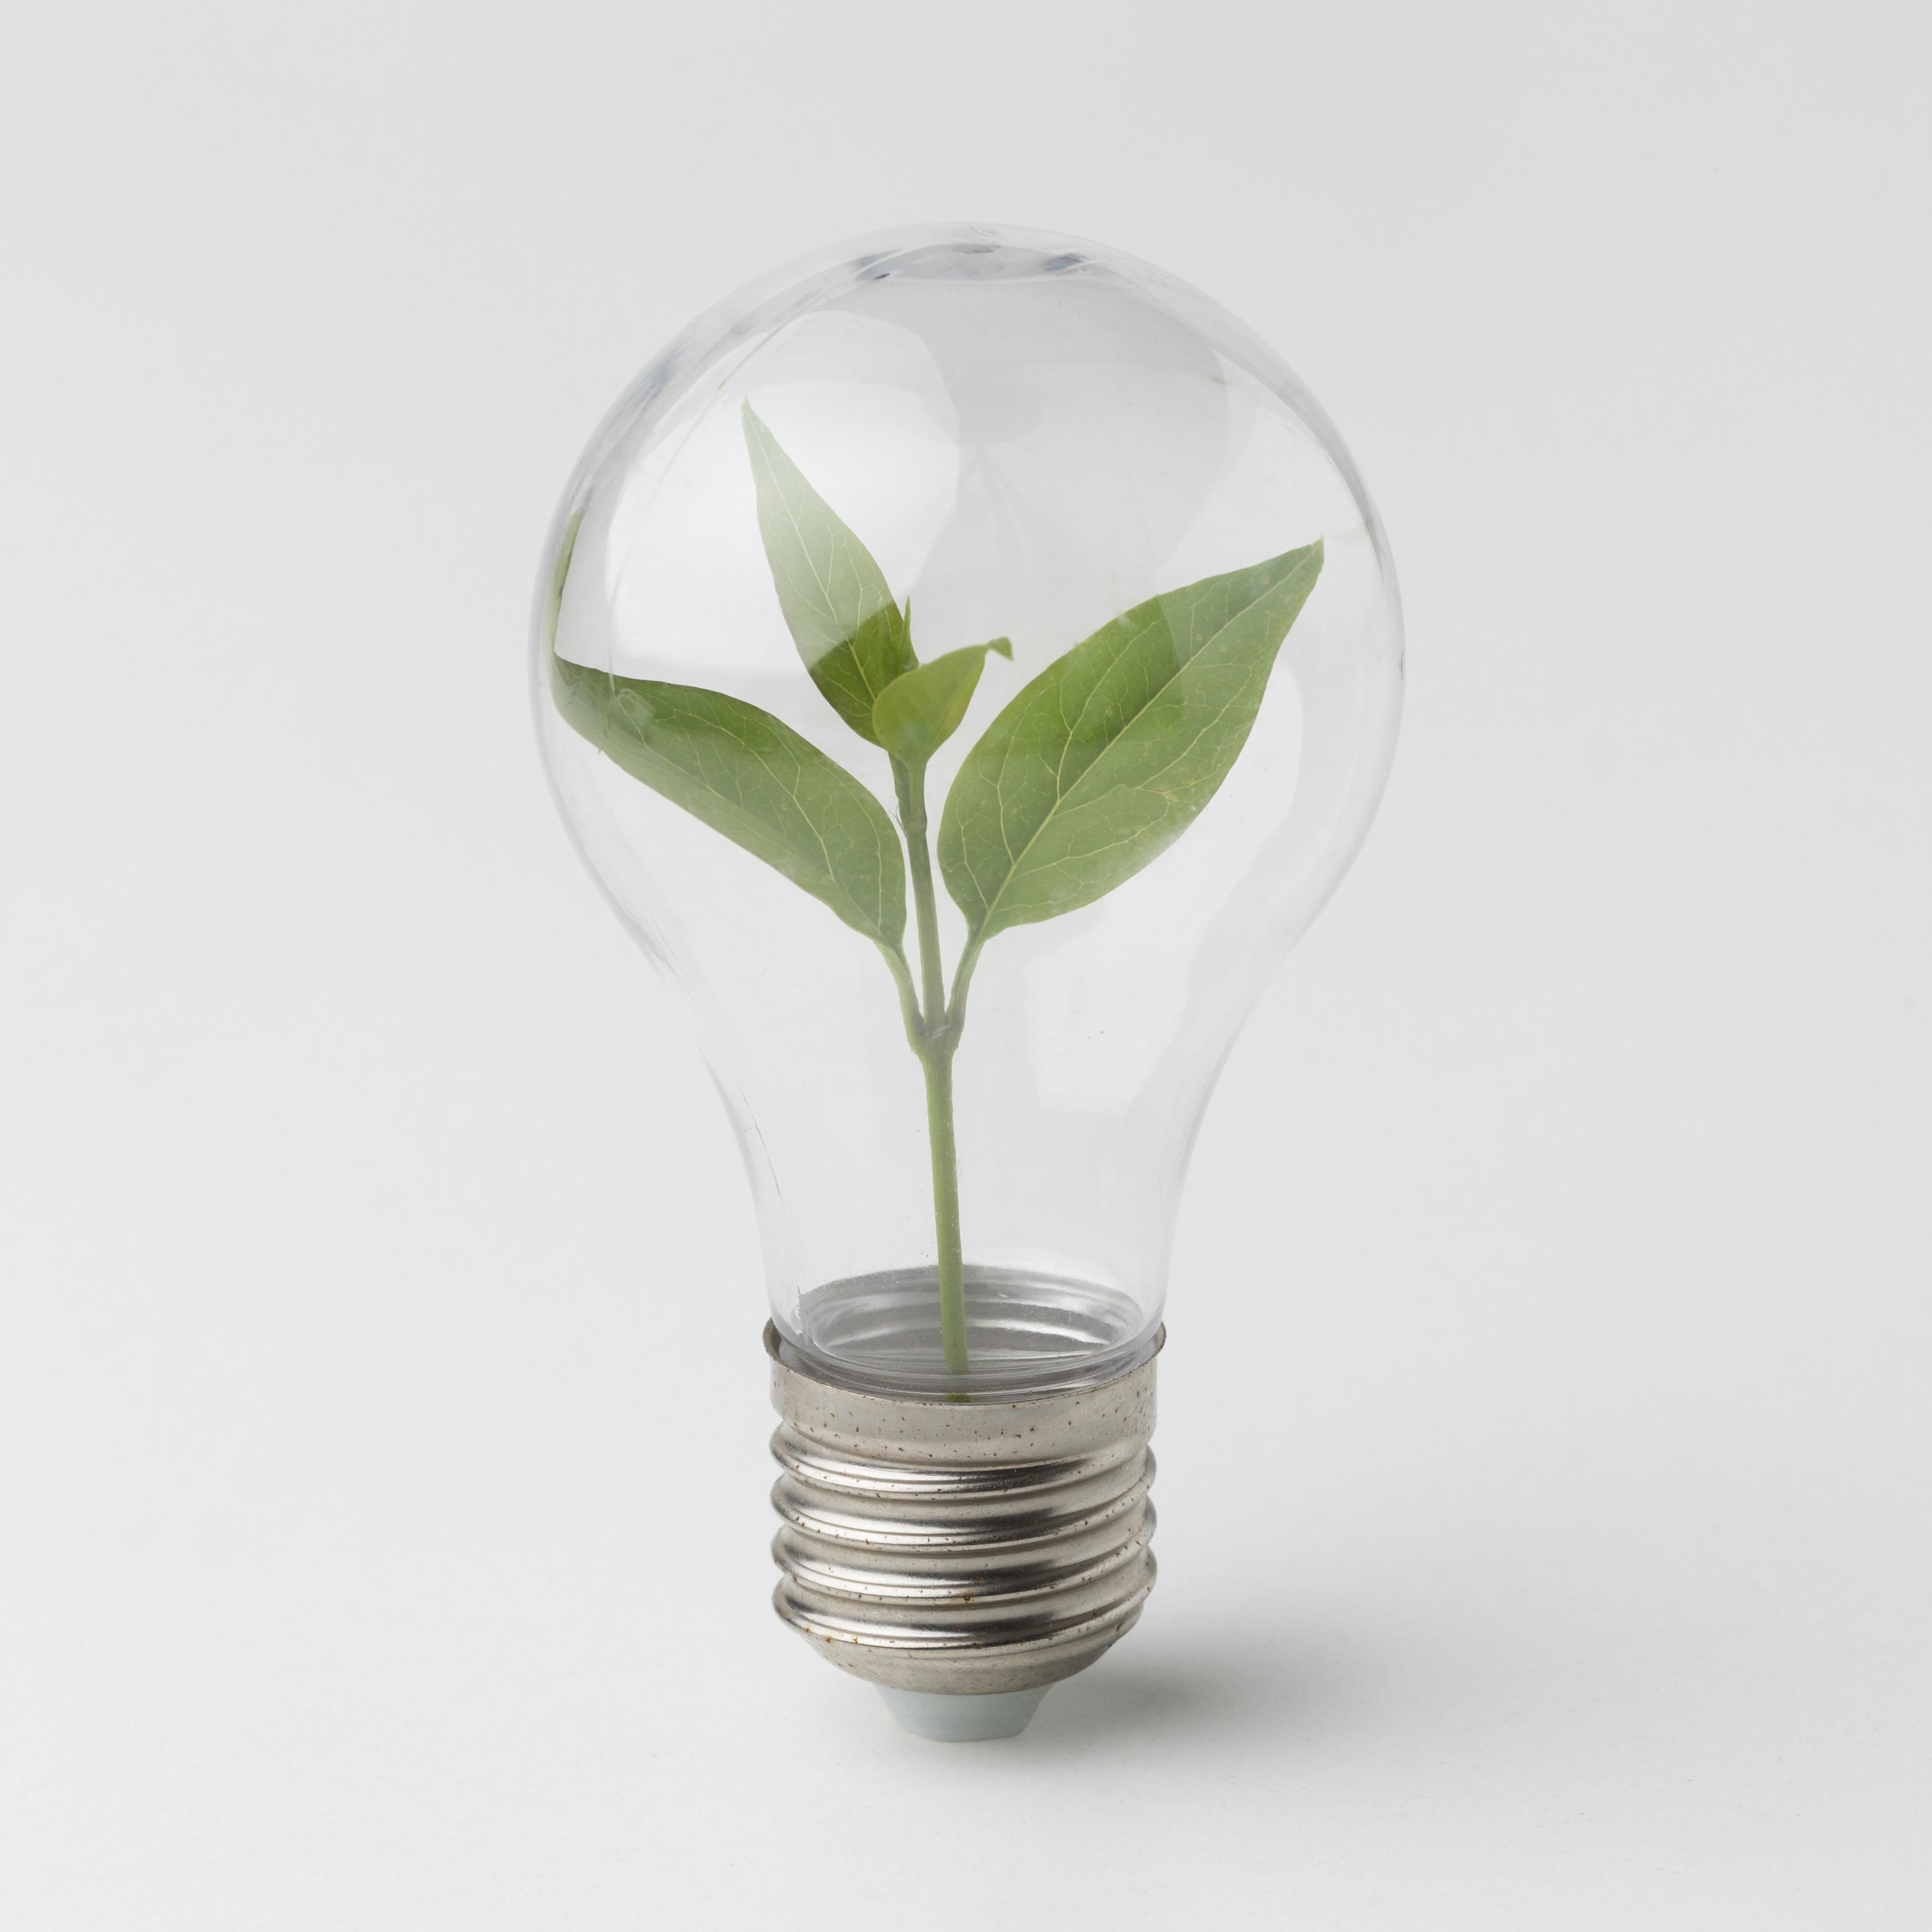 Illuminazione sostenibile: efficienza energetica e tecnologie LED